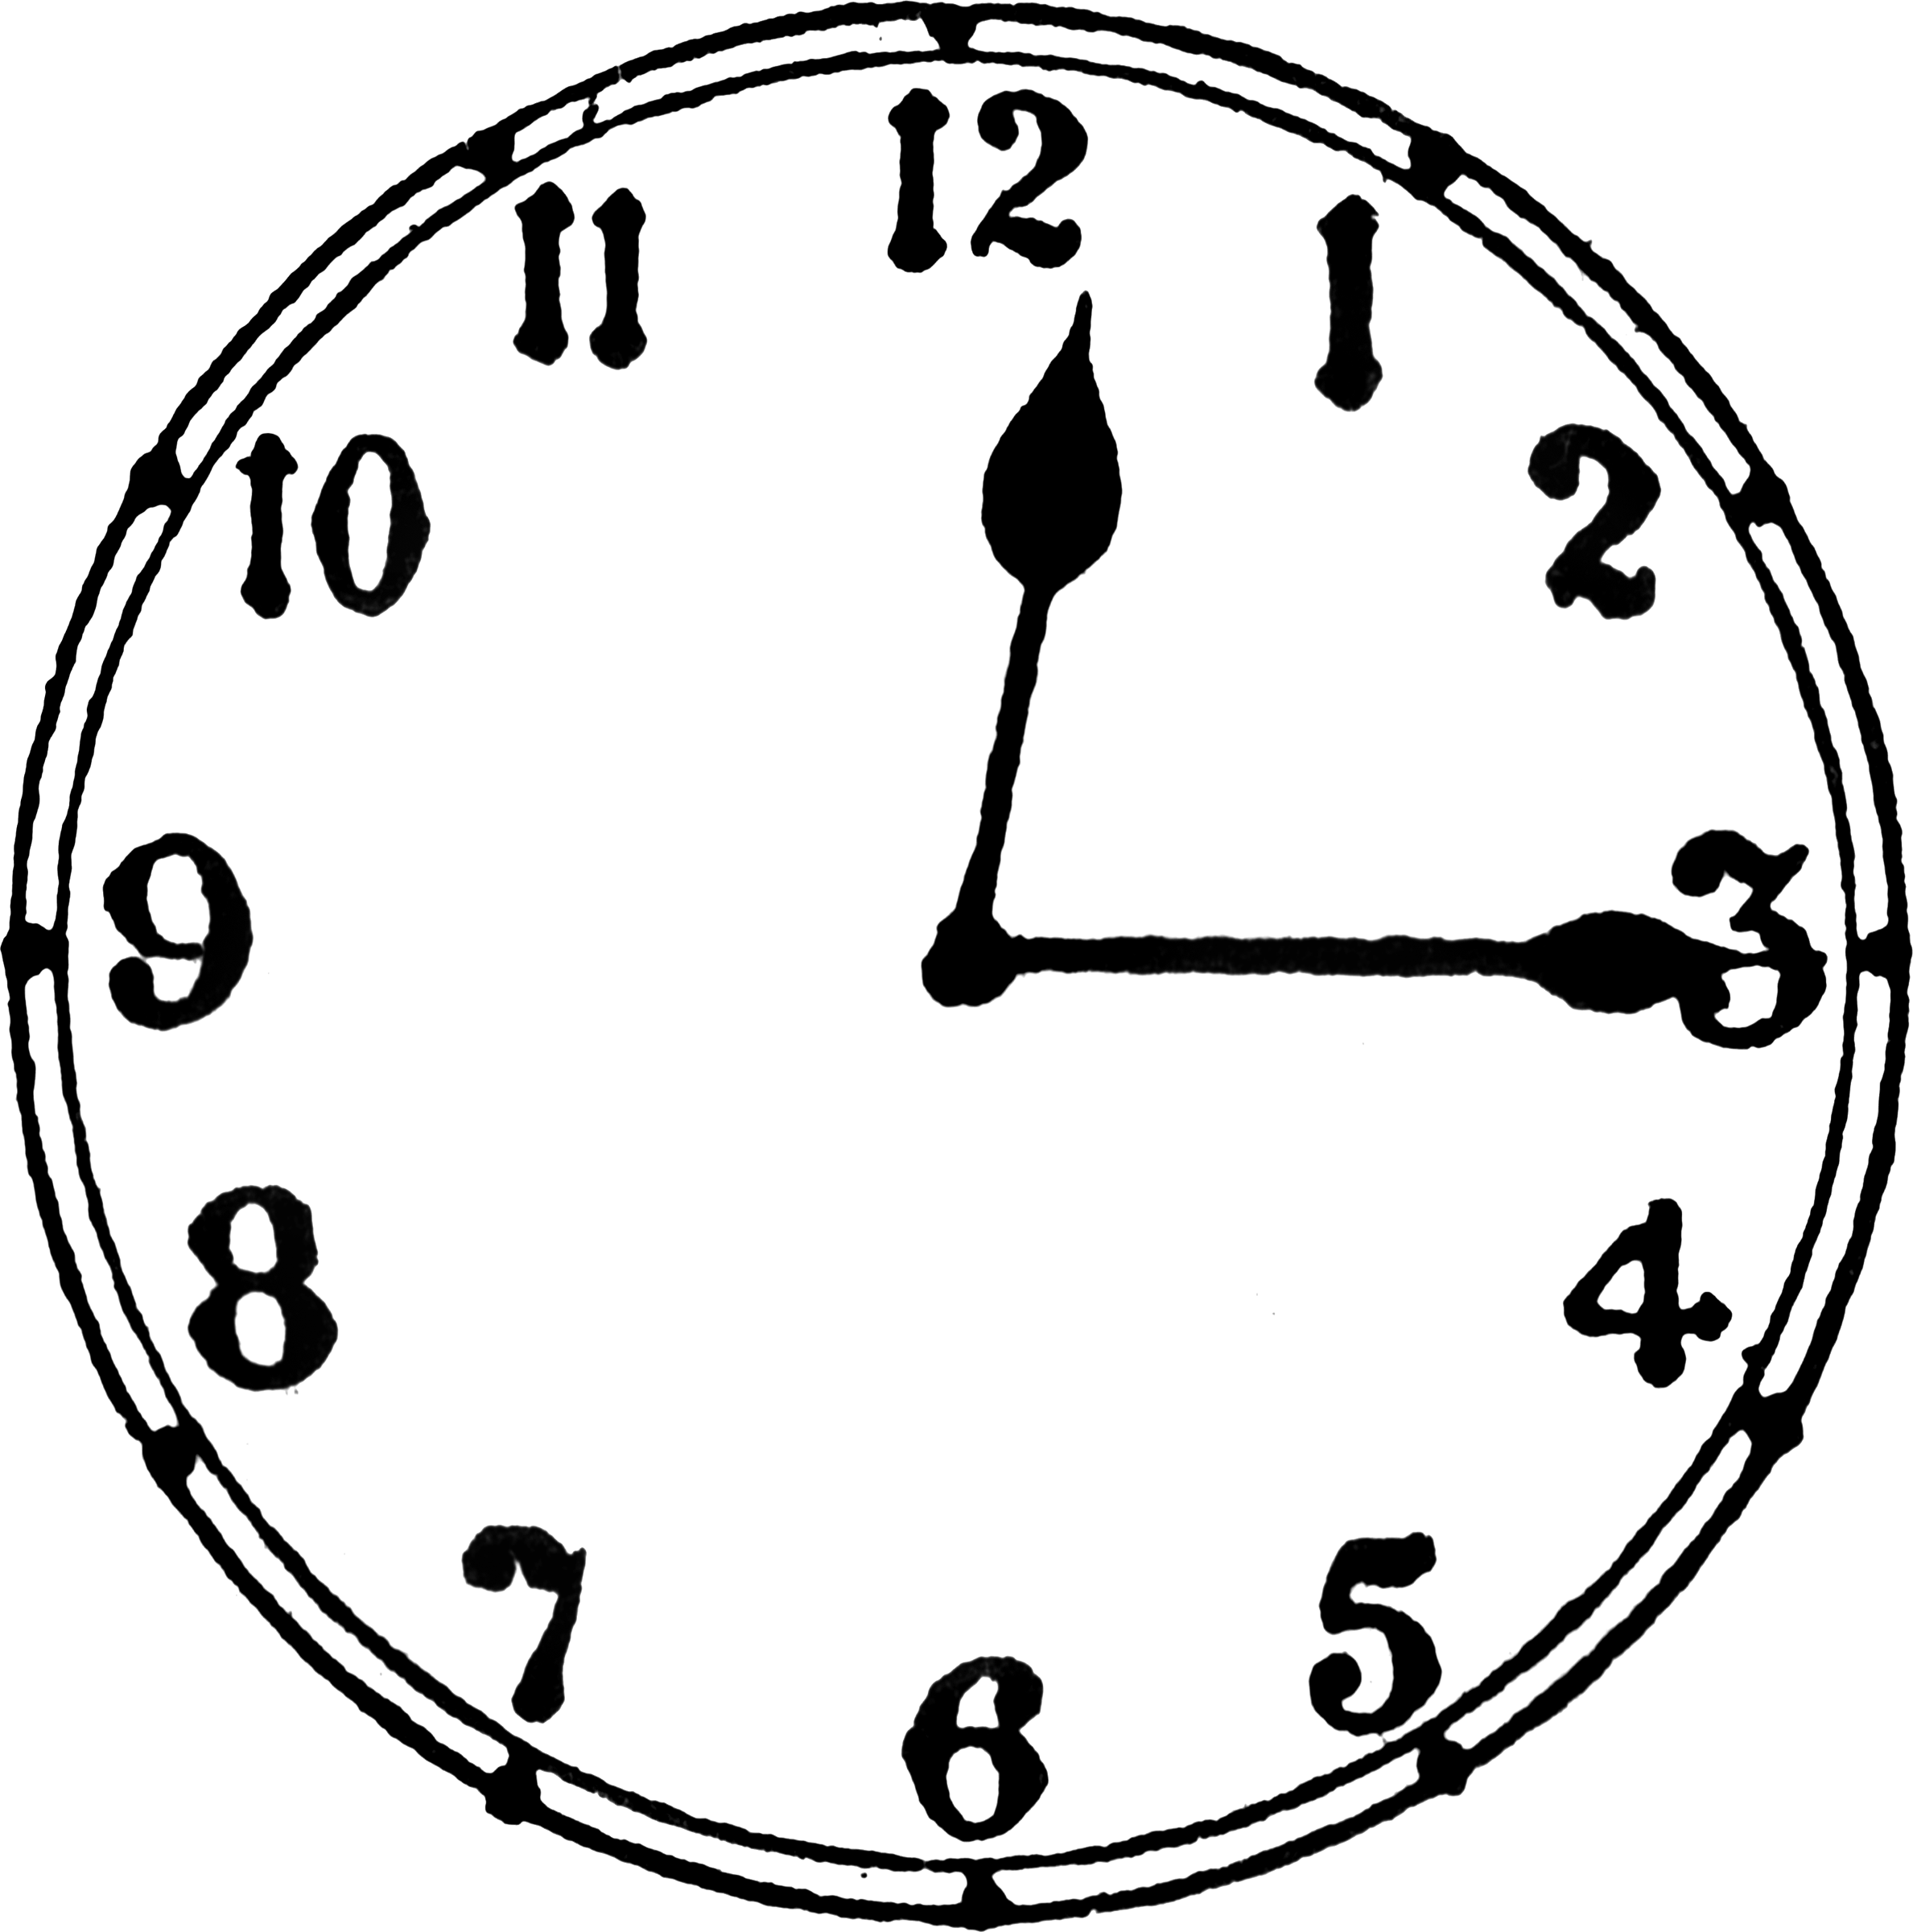 3 12 от часа будет. Часы 12:15. Циферблат 12 часов 15 минут. Часы рисунок циферблат. 12 Часов 15 минут на часах.